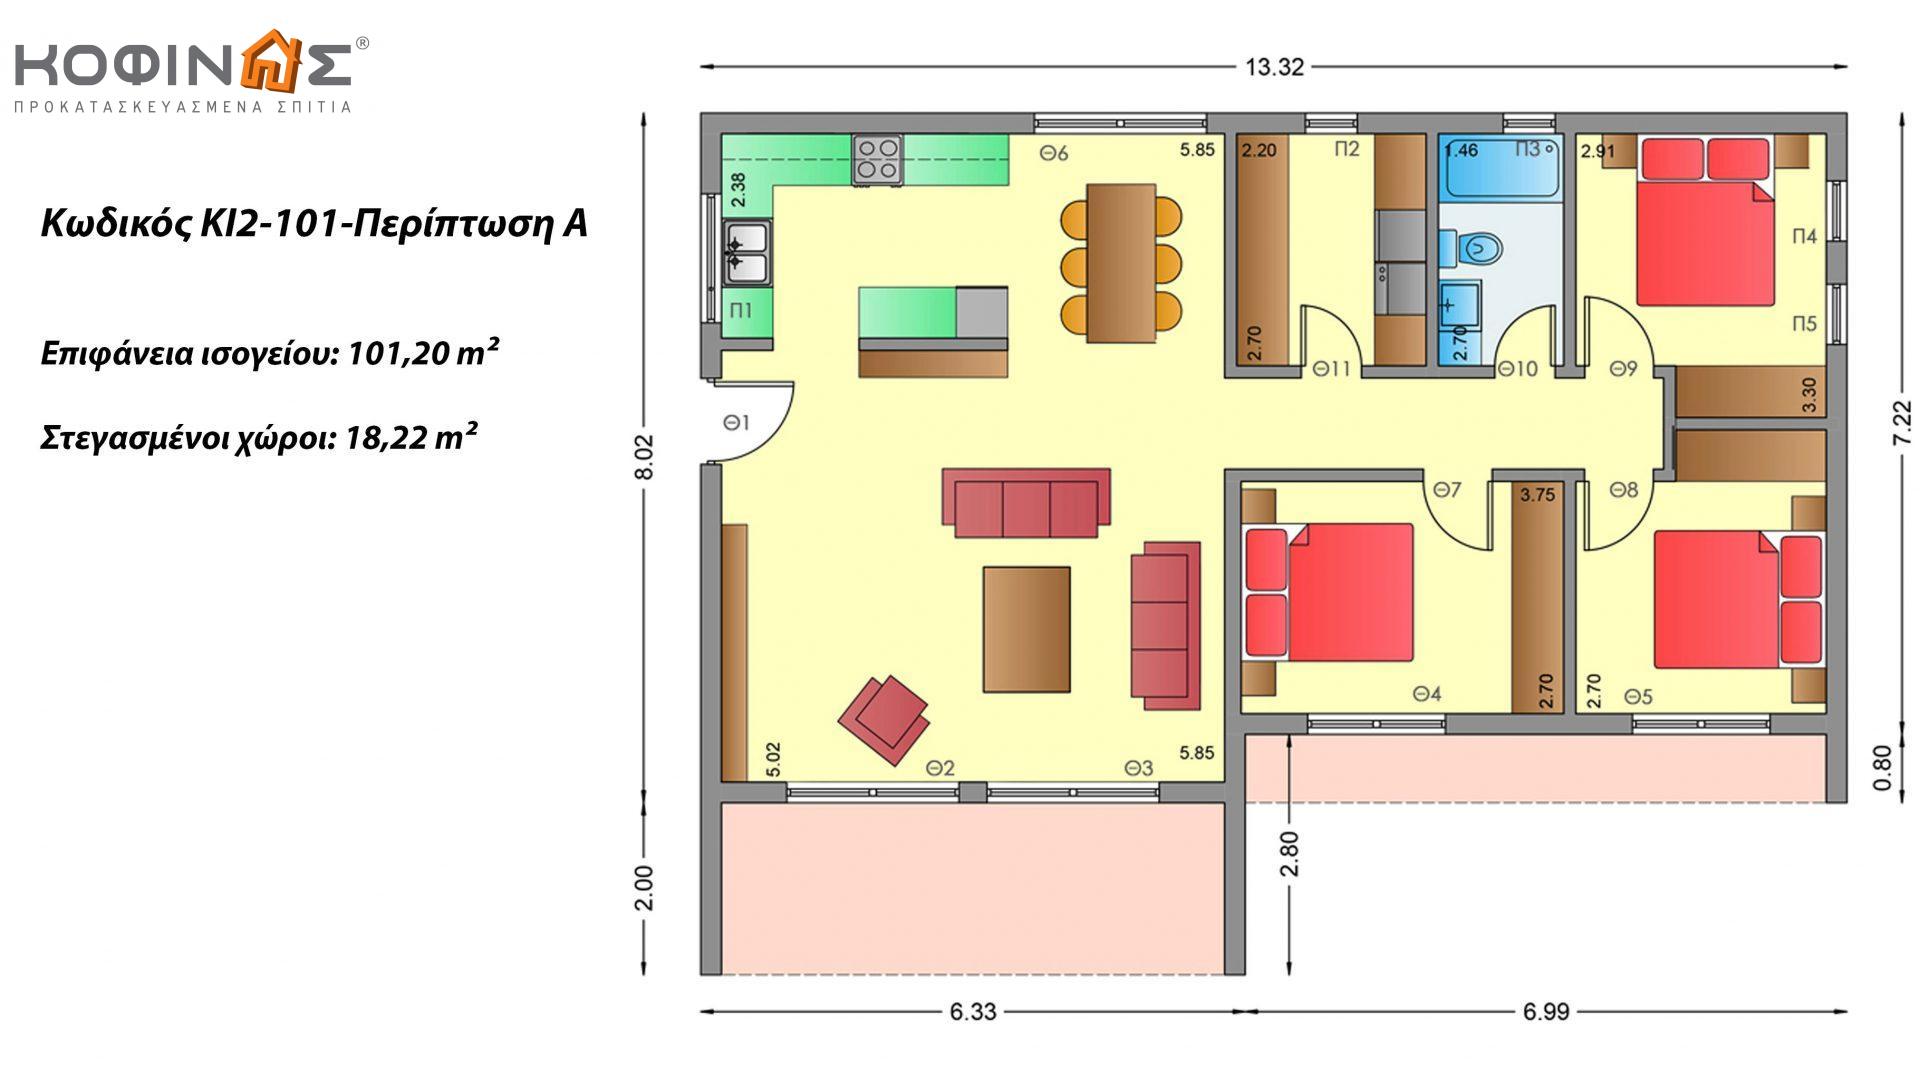 Ισόγεια Κατοικία KI2-101 συνολικής επιφάνειας 101,20 τ.μ., στεγασμένοι χώροι 18,22 τ.μ